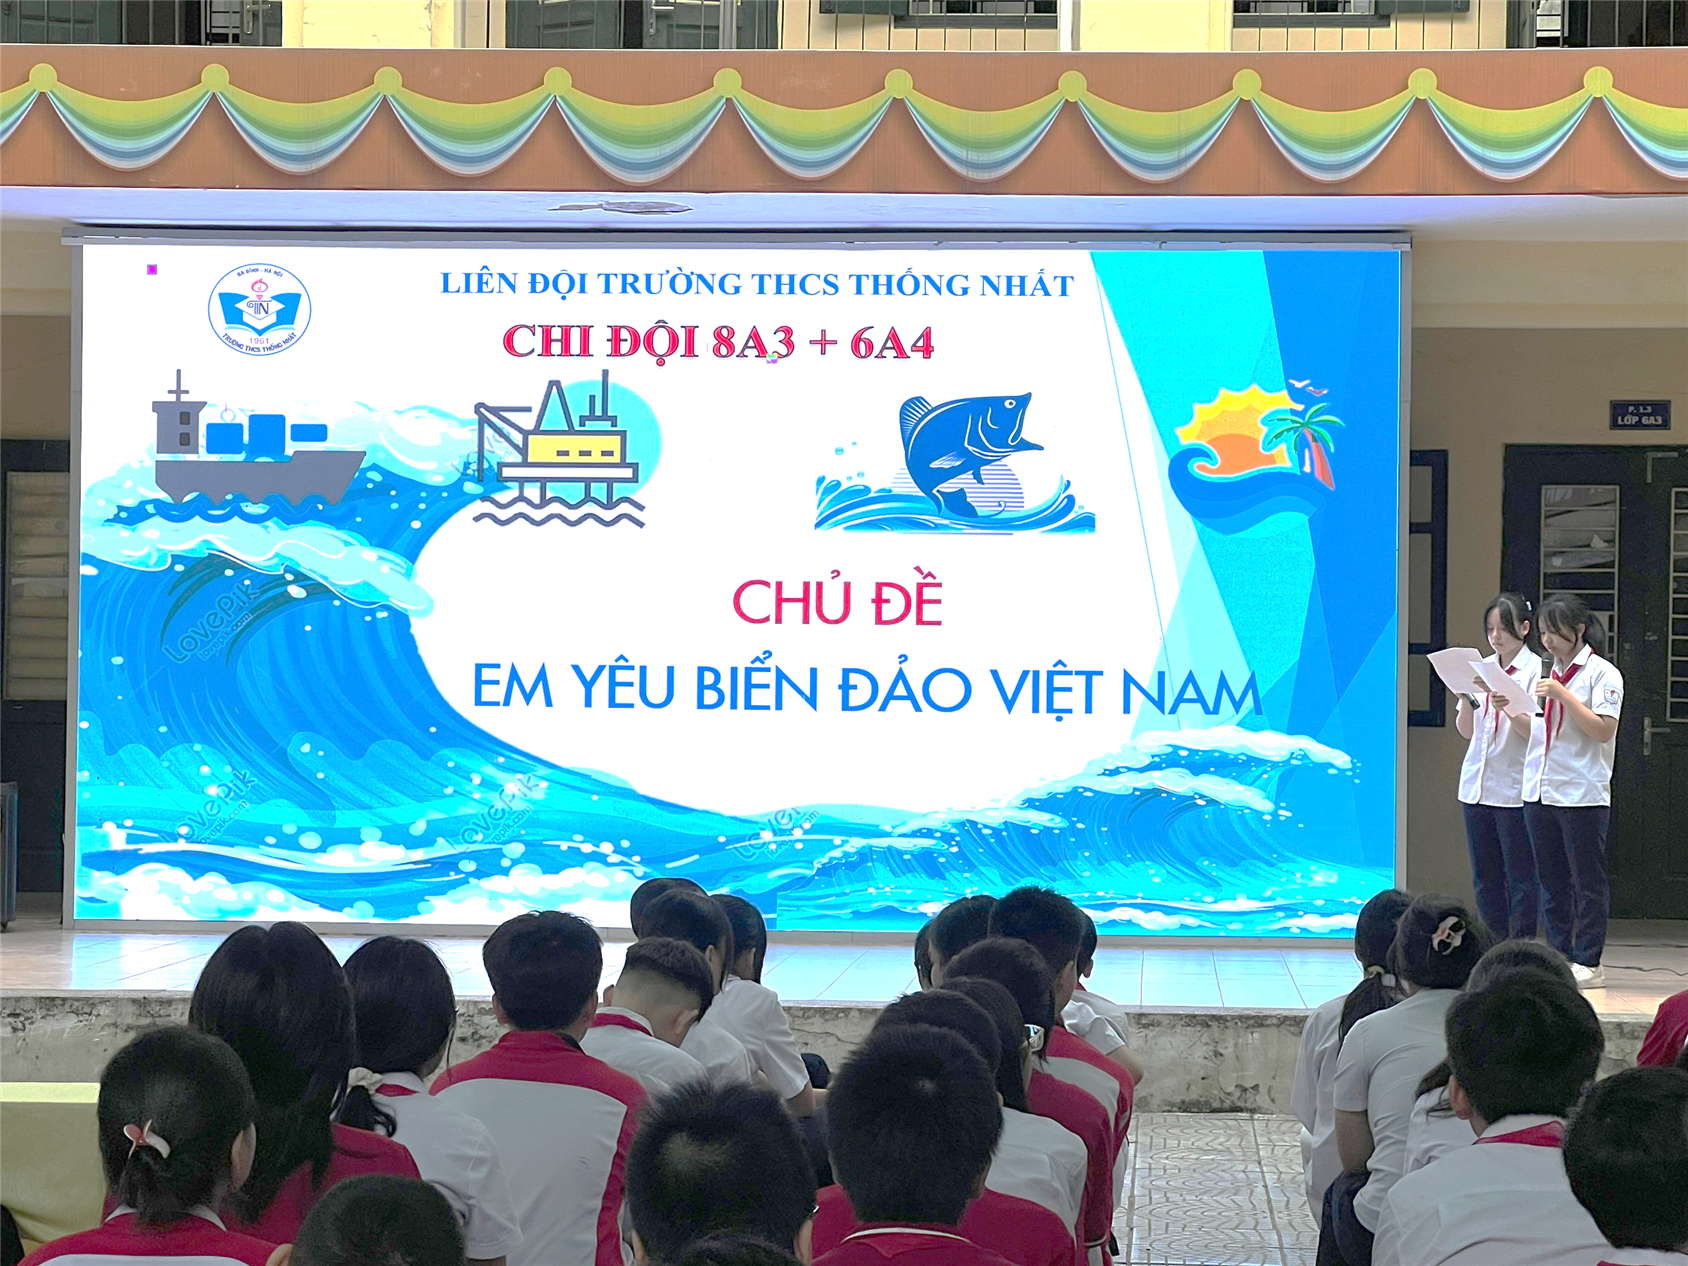 “Em yêu biển, đảo Việt Nam” - Phát thanh măng non của chi đội 8A3 và 6A4